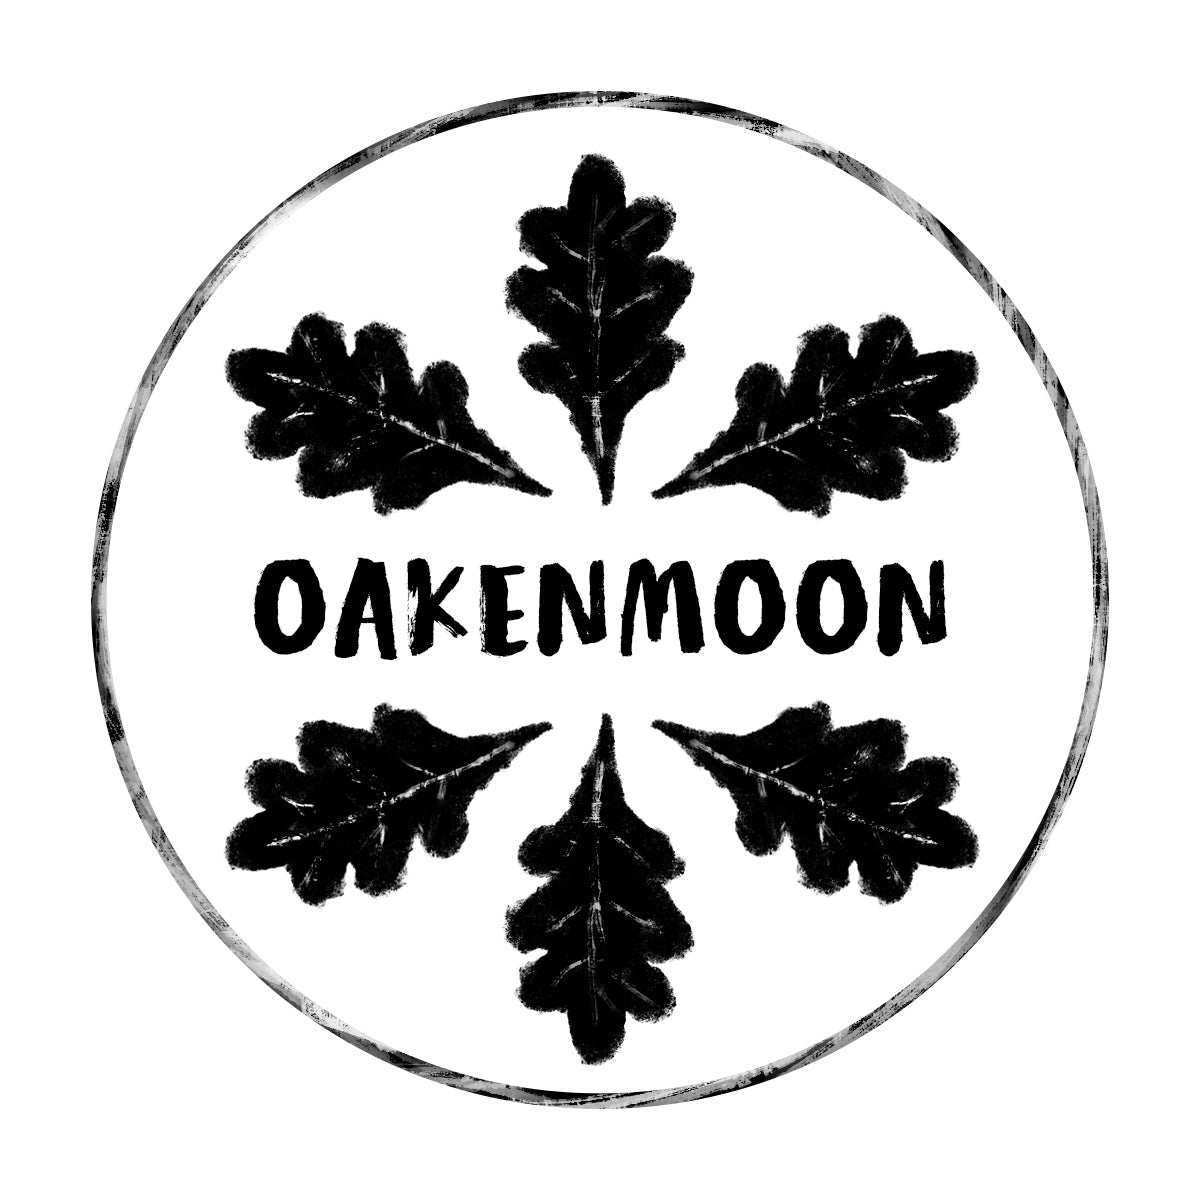 OakenMoon